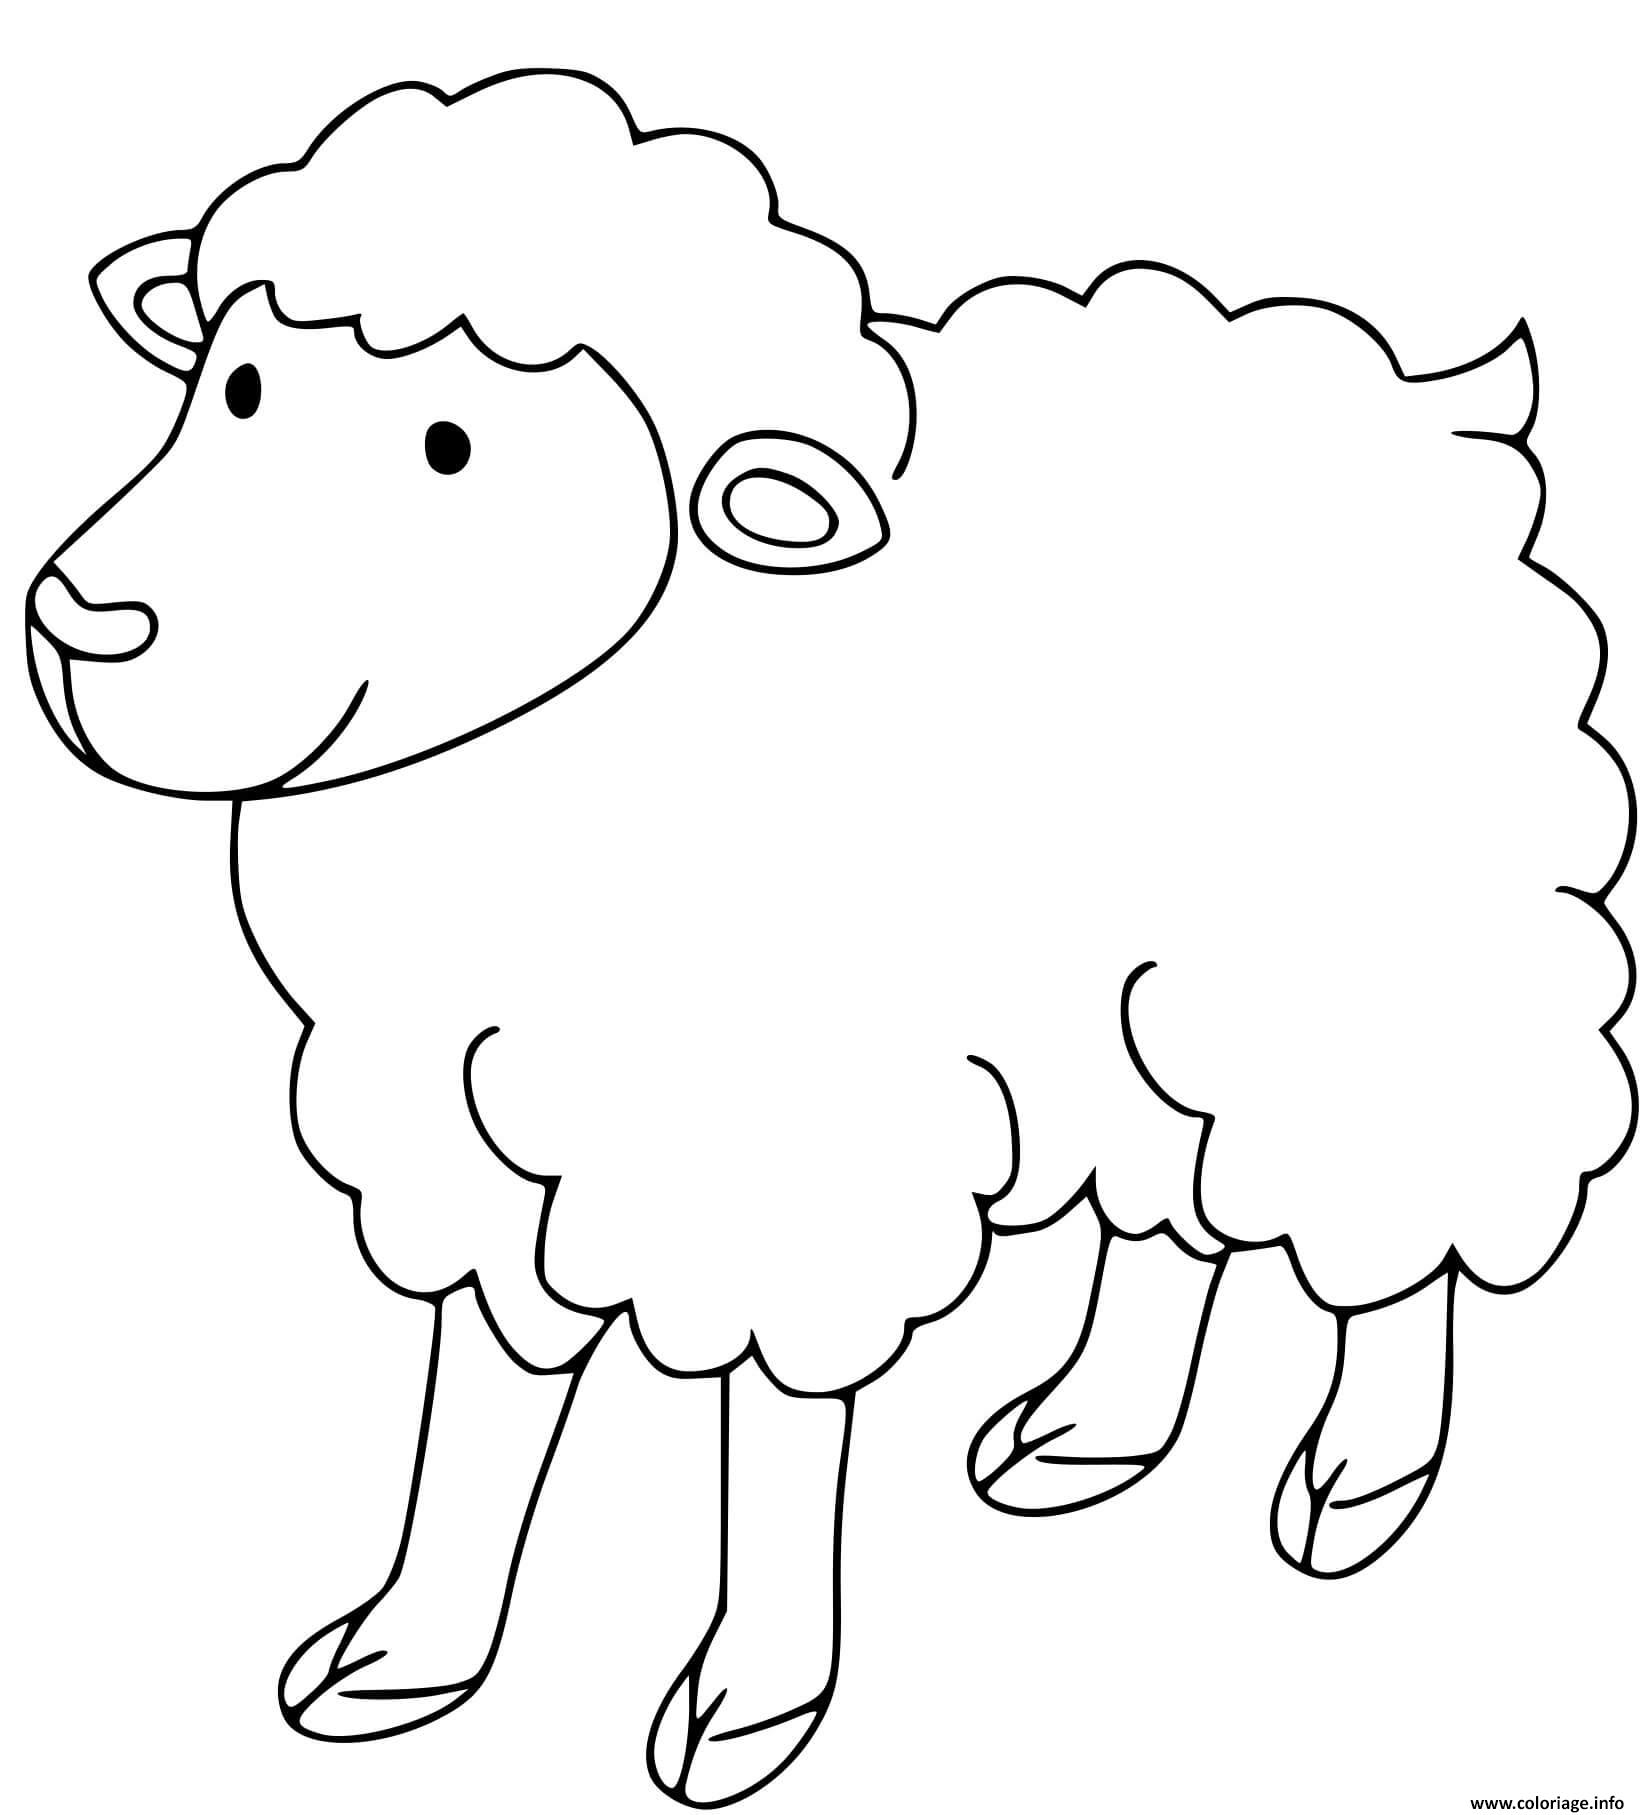 Dessin belier mouton maternelle Coloriage Gratuit à Imprimer